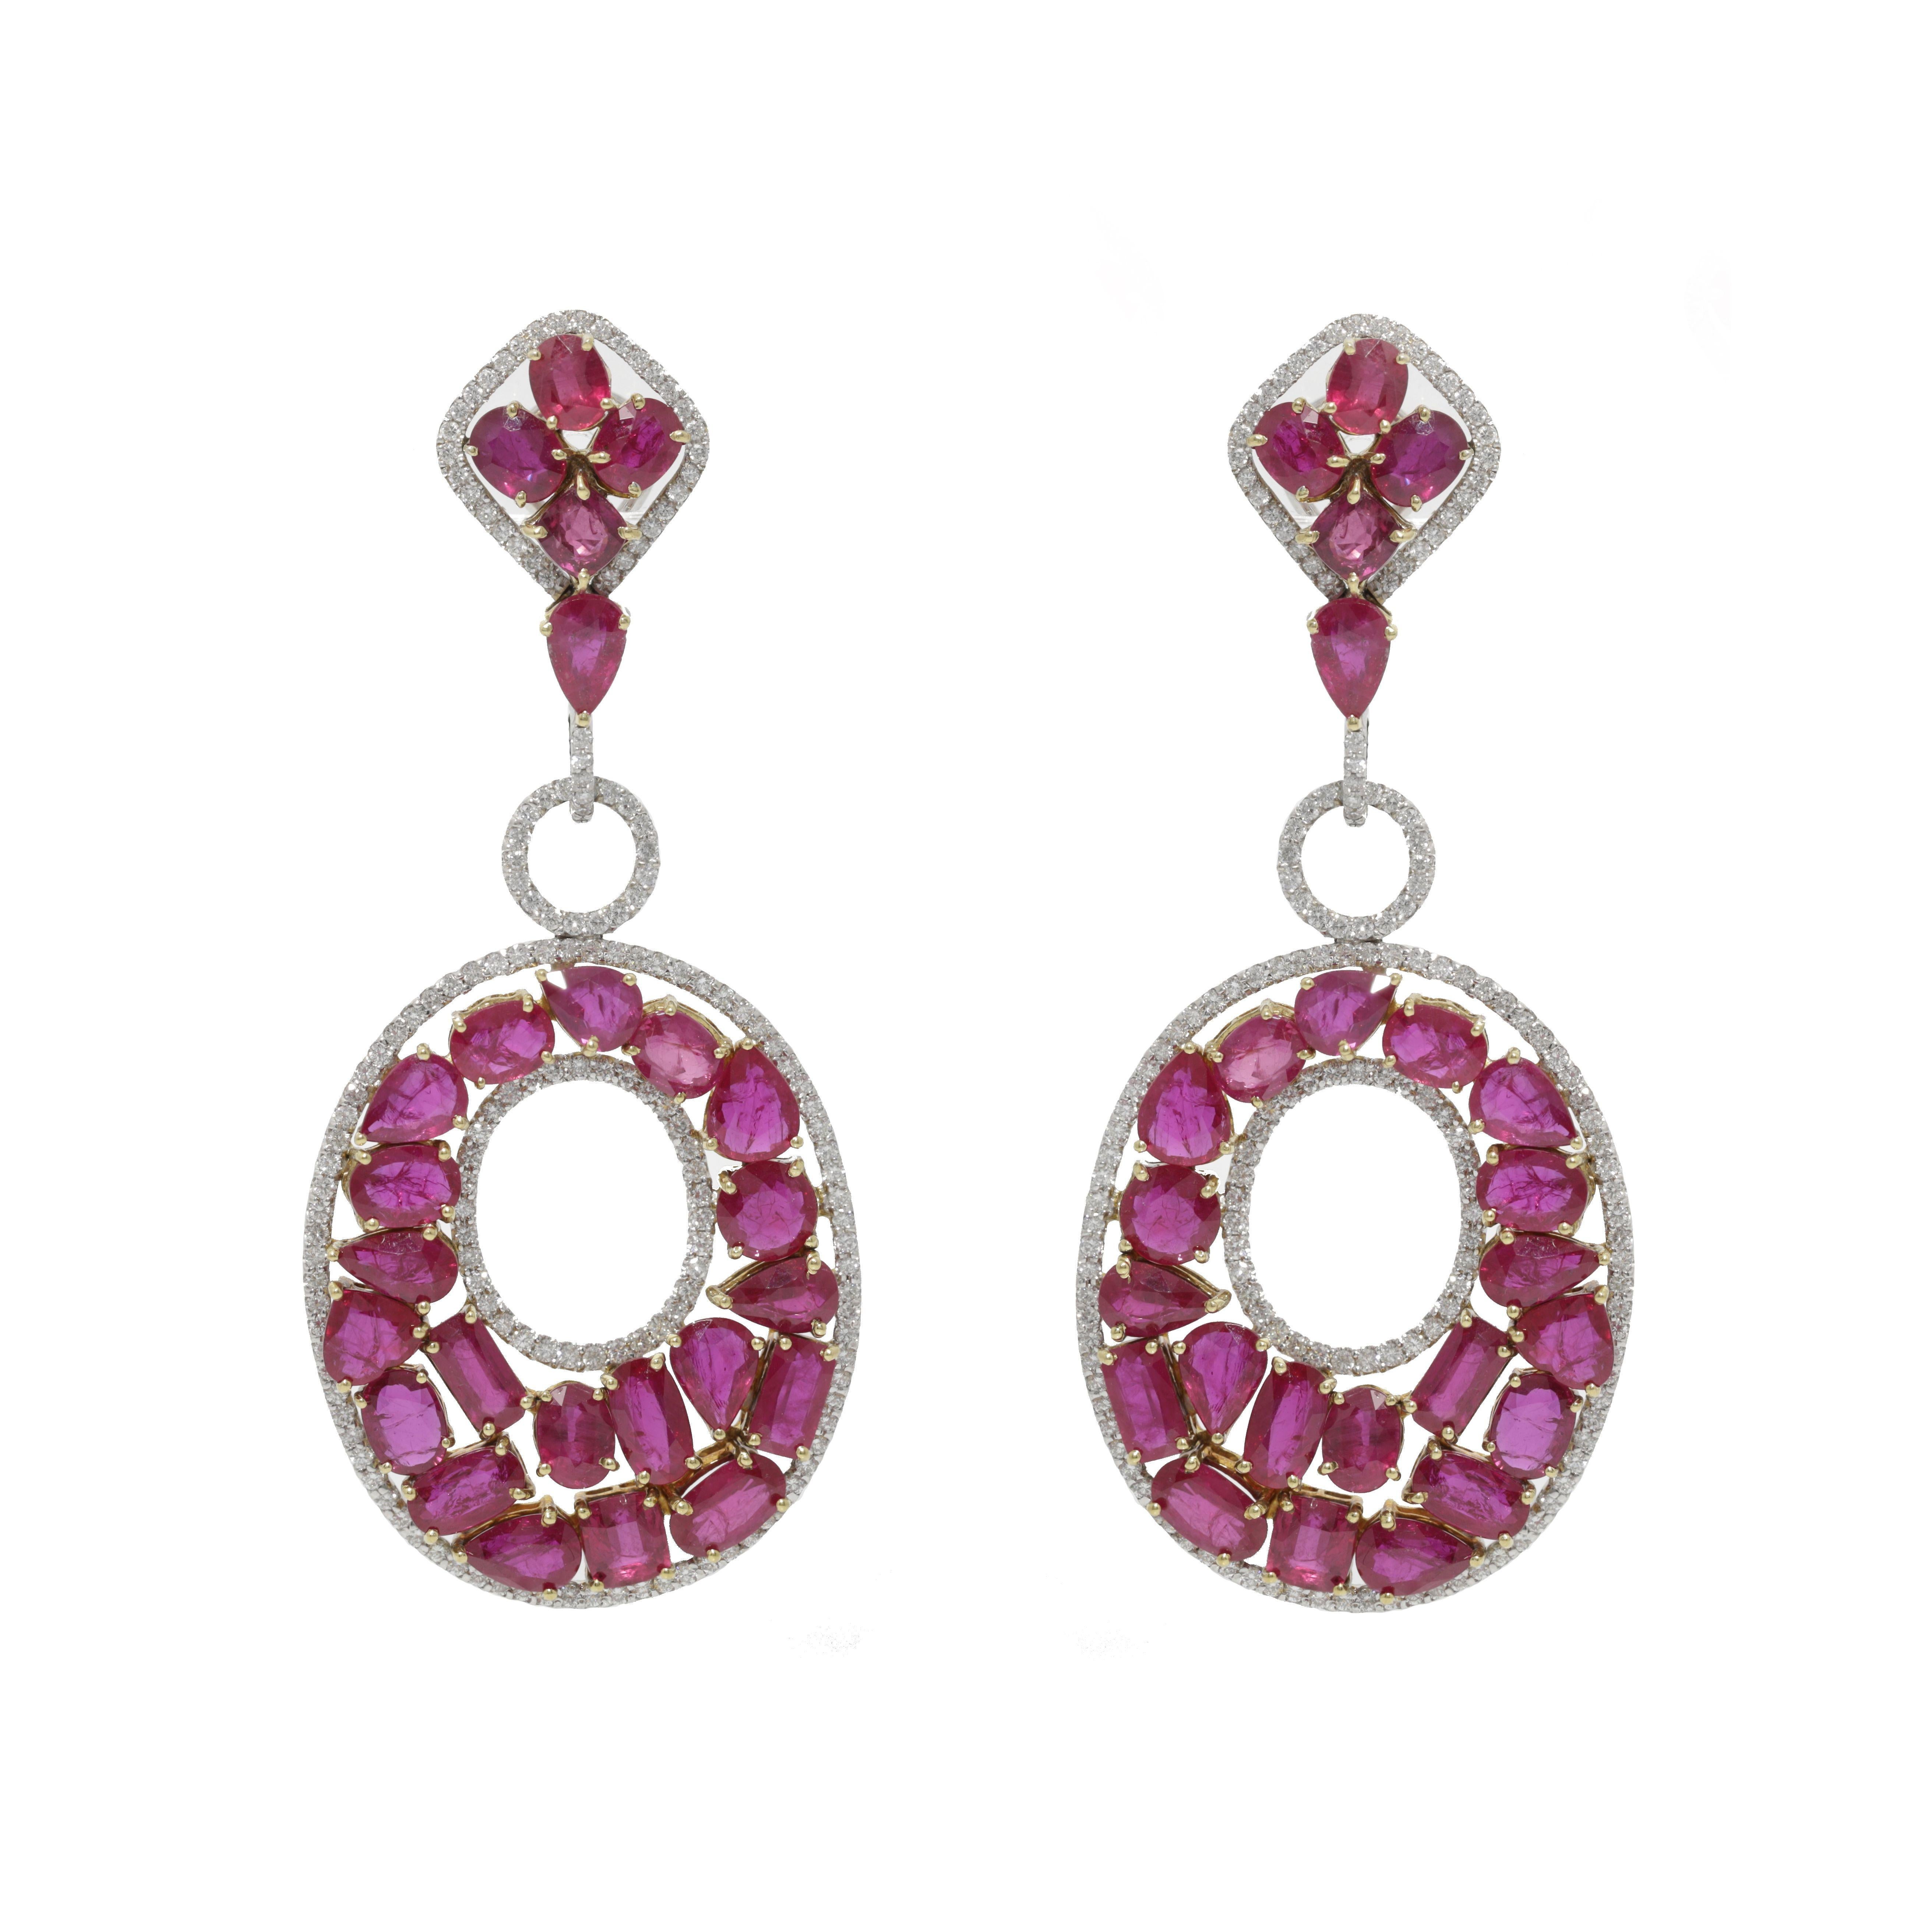 Boucles d'oreilles chandelier en rubis et diamants avec 53,20ct de rubis et 7,65ct de diamants sertis en or blanc et jaune 18kt.